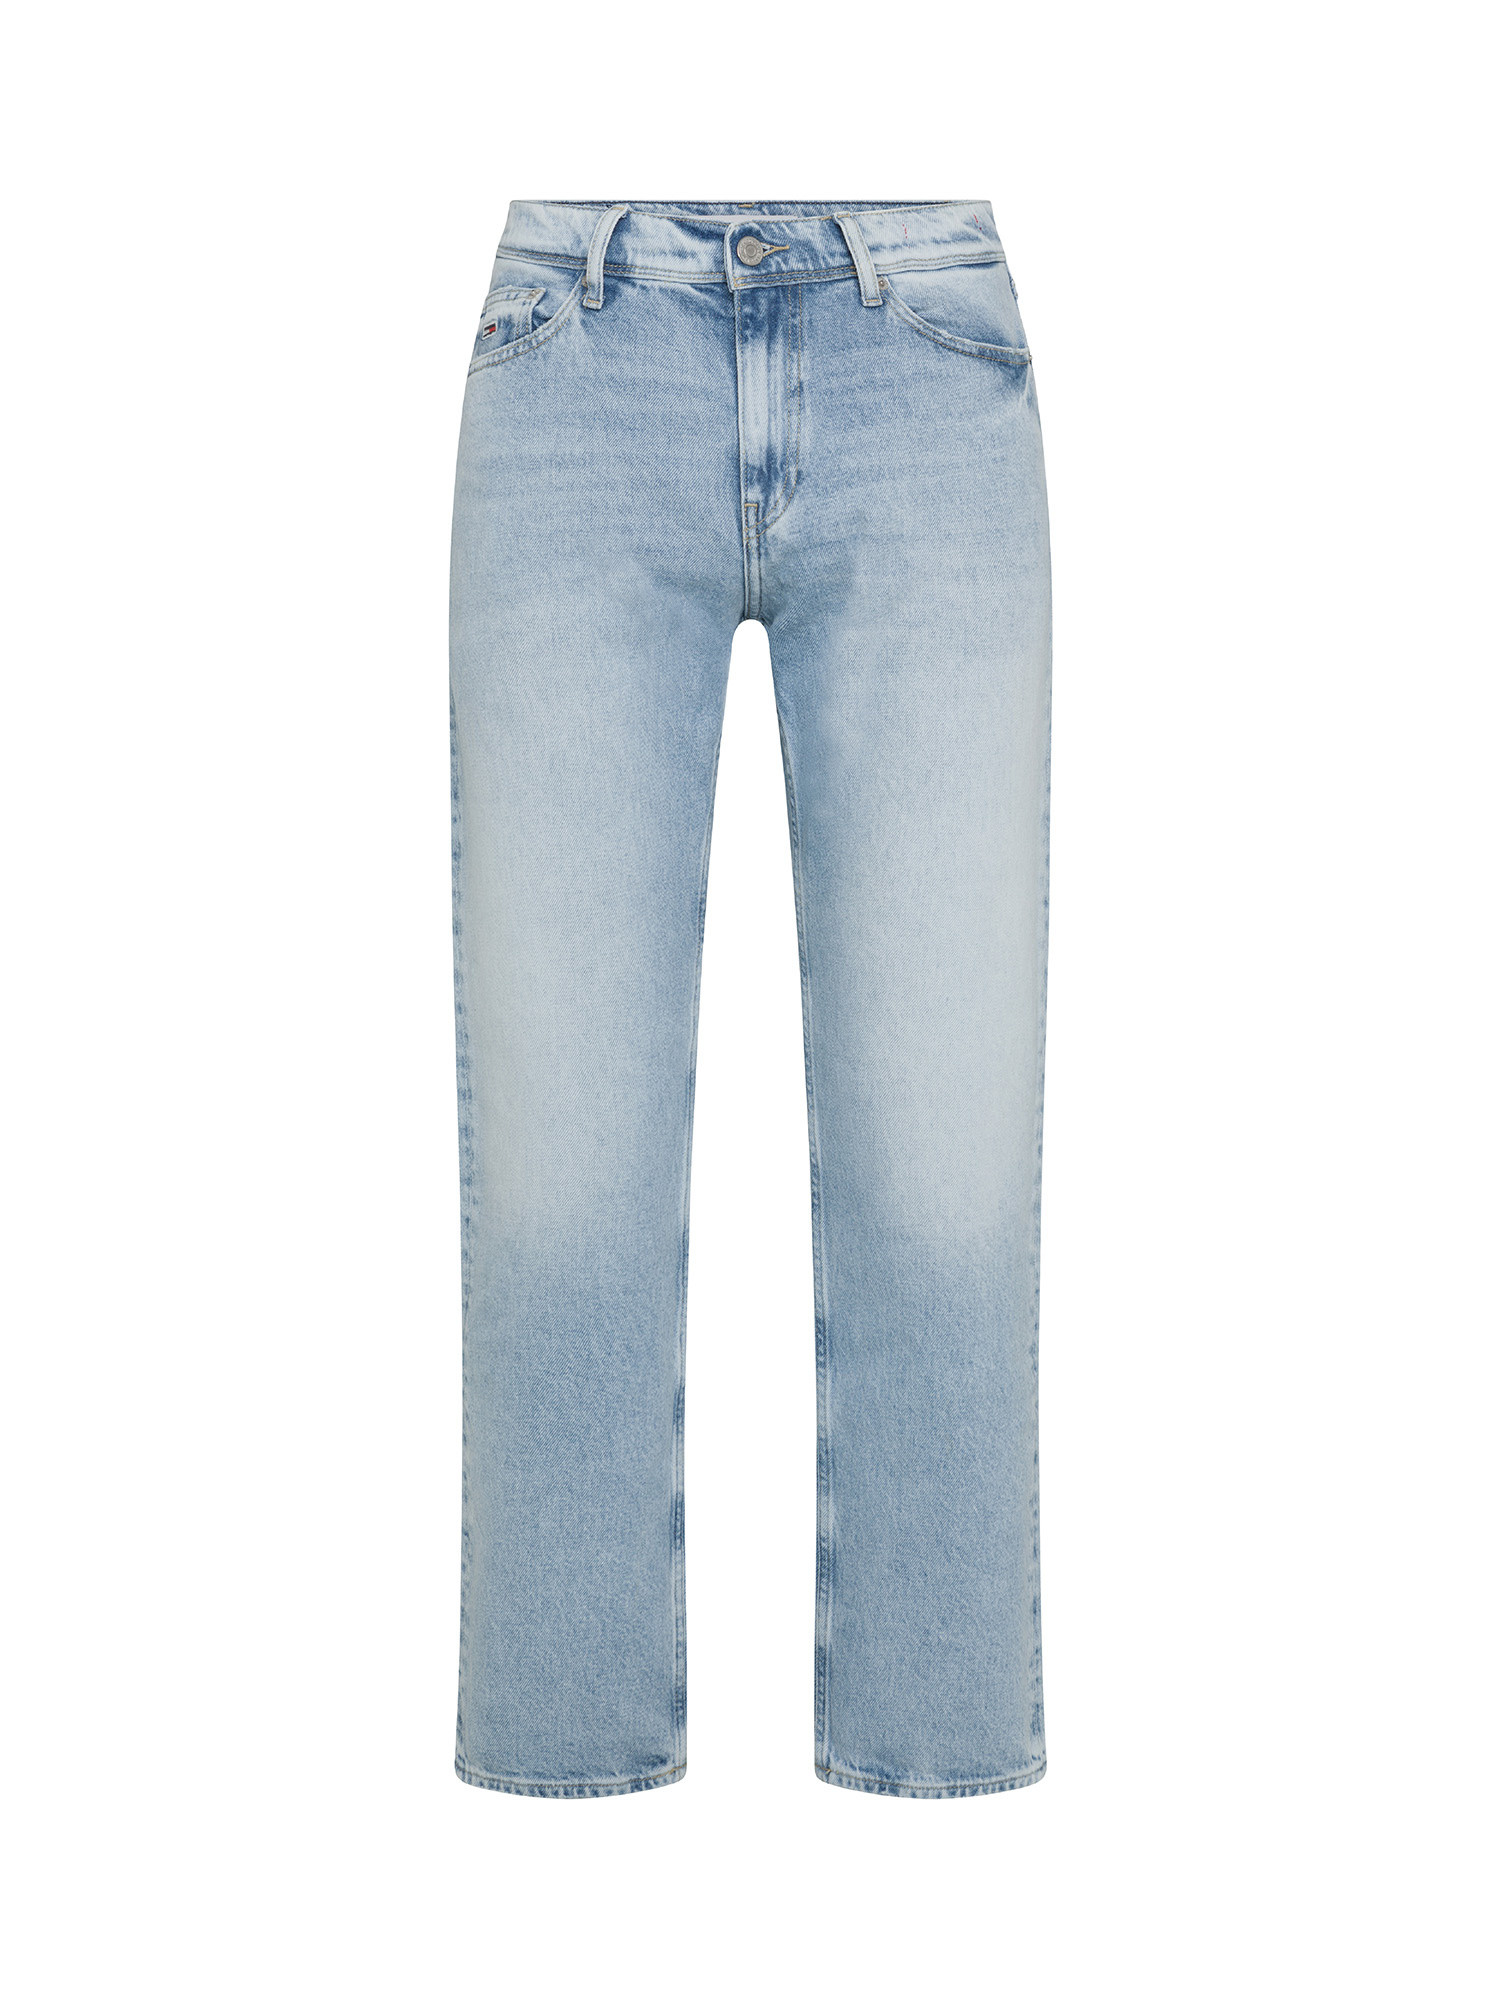 Tommy Jeans - Jeans cinque tasche, Azzurro chiaro, large